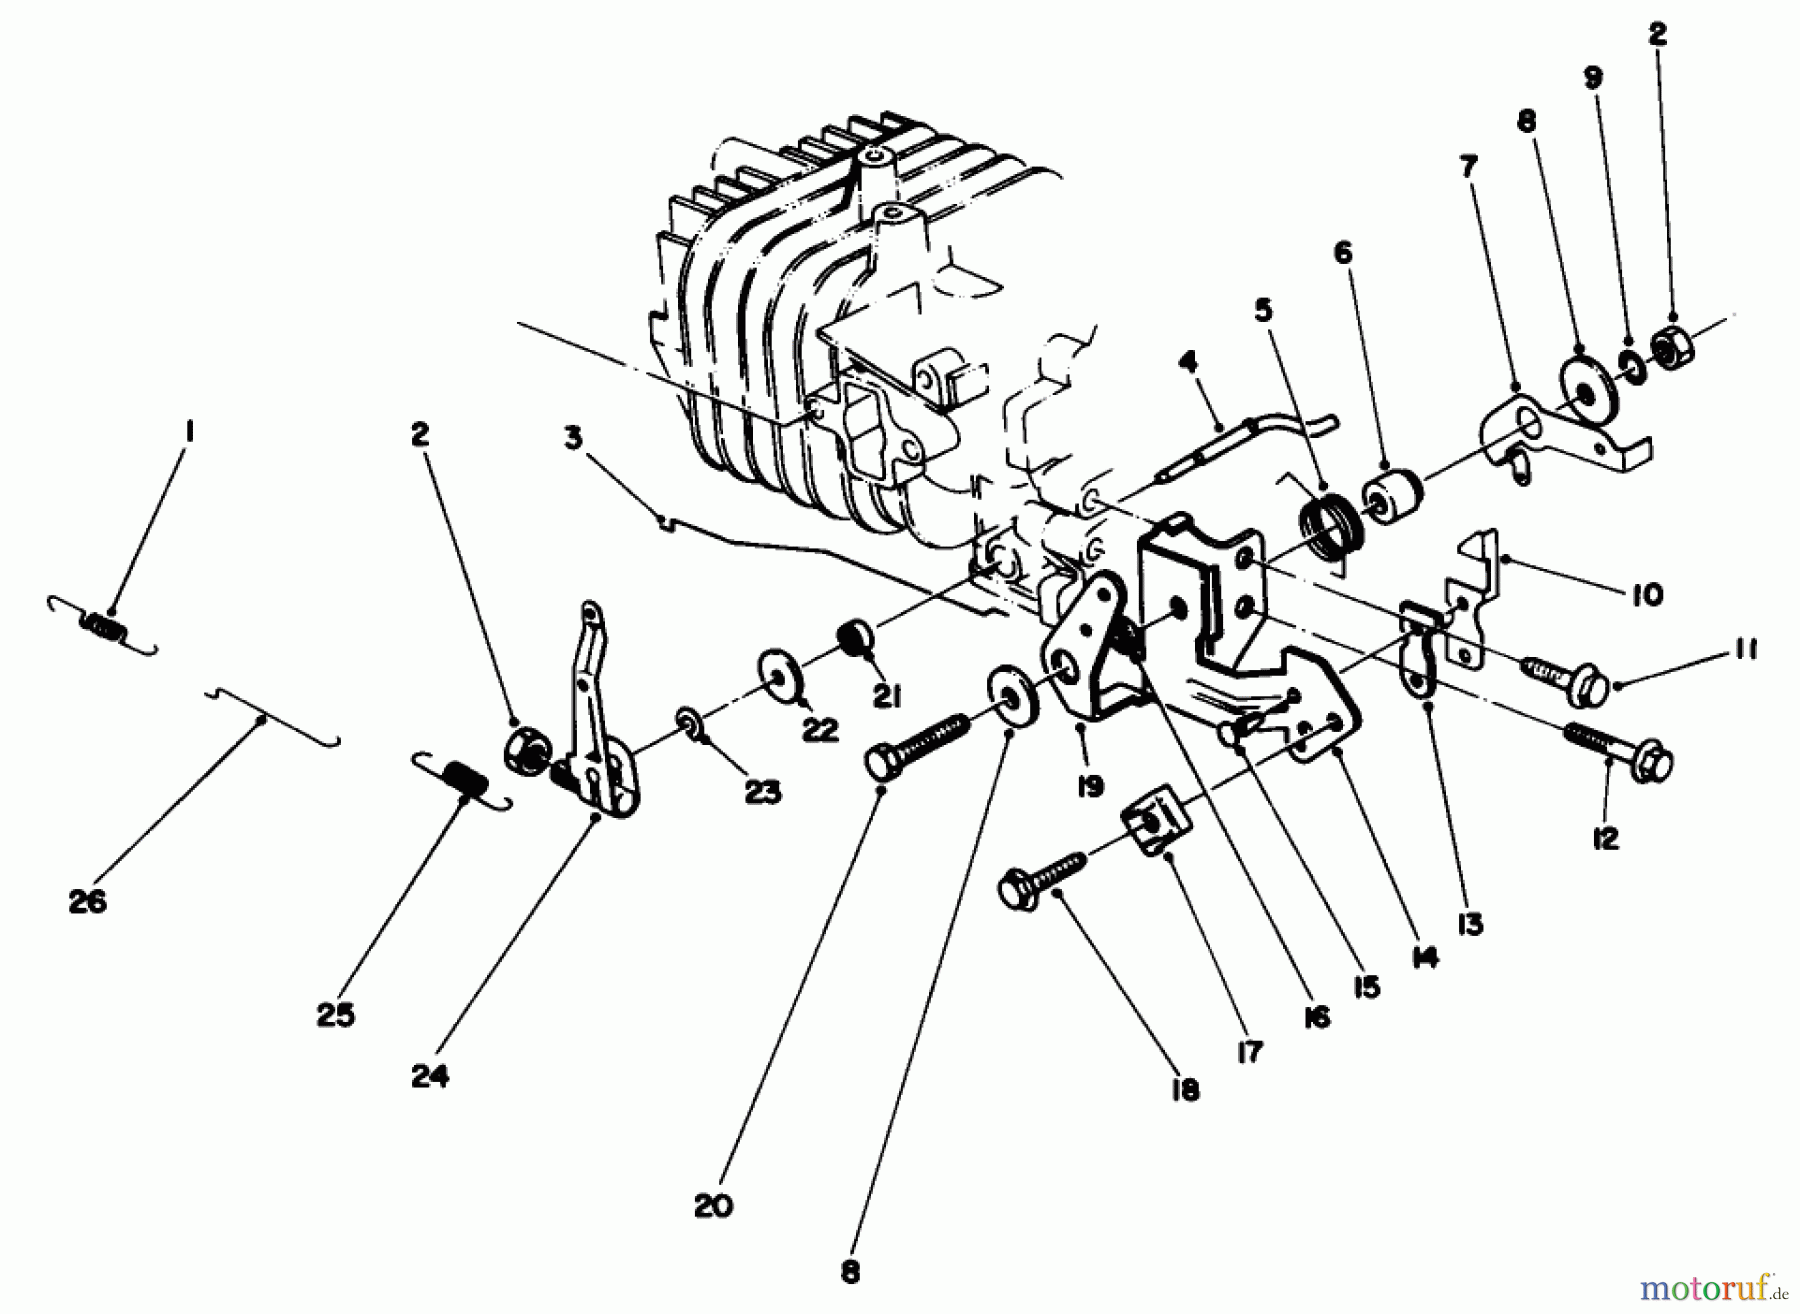  Toro Neu Mowers, Walk-Behind Seite 2 22700C - Toro Lawnmower, 1988 (8000001-8999999) ENGINE ASSEMBLY MODEL NO. 47PH7 #4